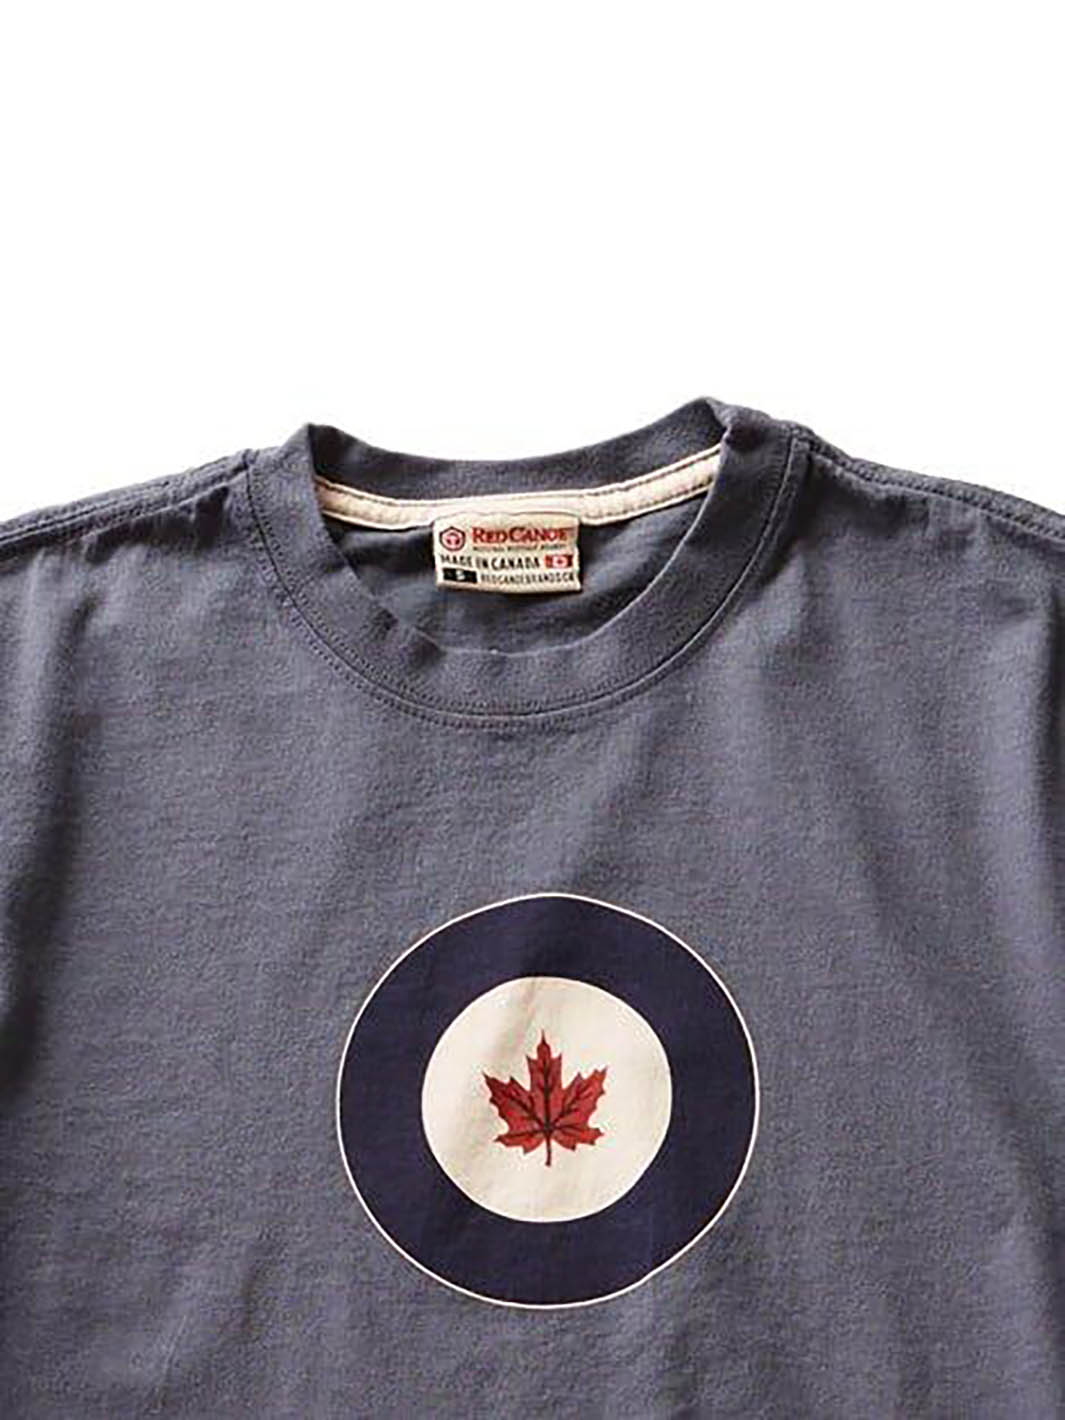 Détails du logo du Tshirt RCAF bleu pour hommes